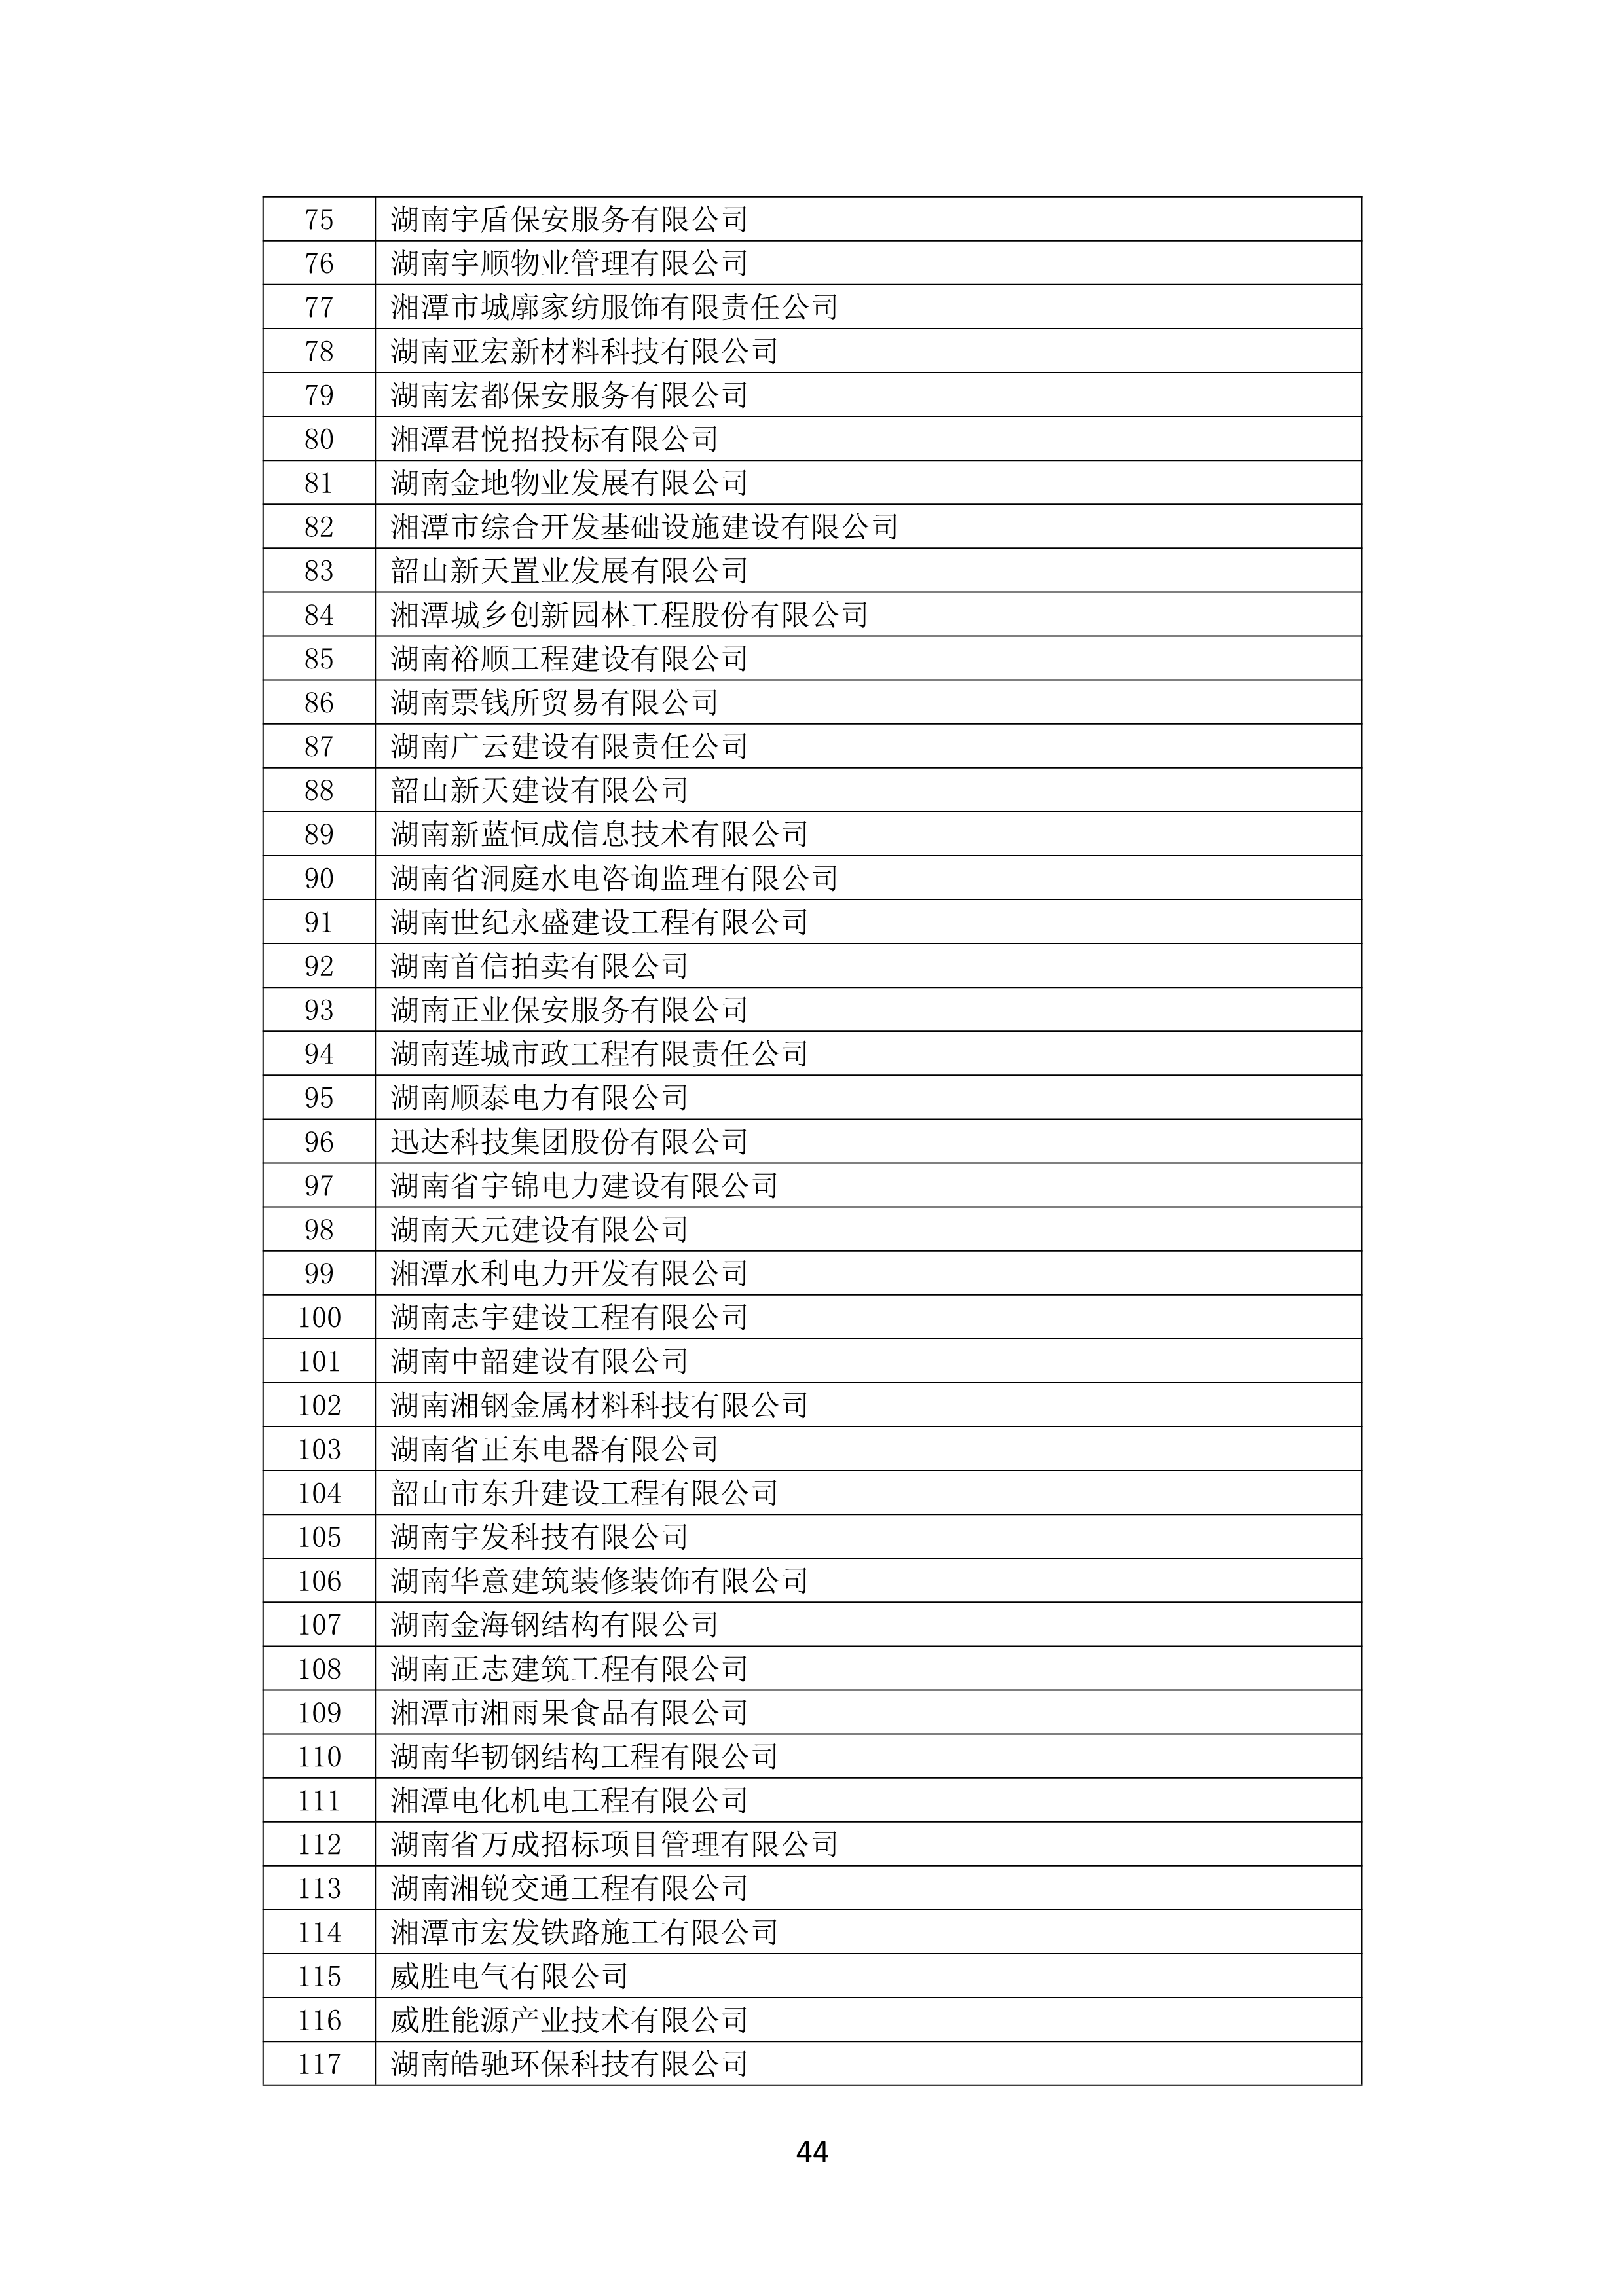 2021 年(nián)度湖南省守合同重信用企業名單_45.png